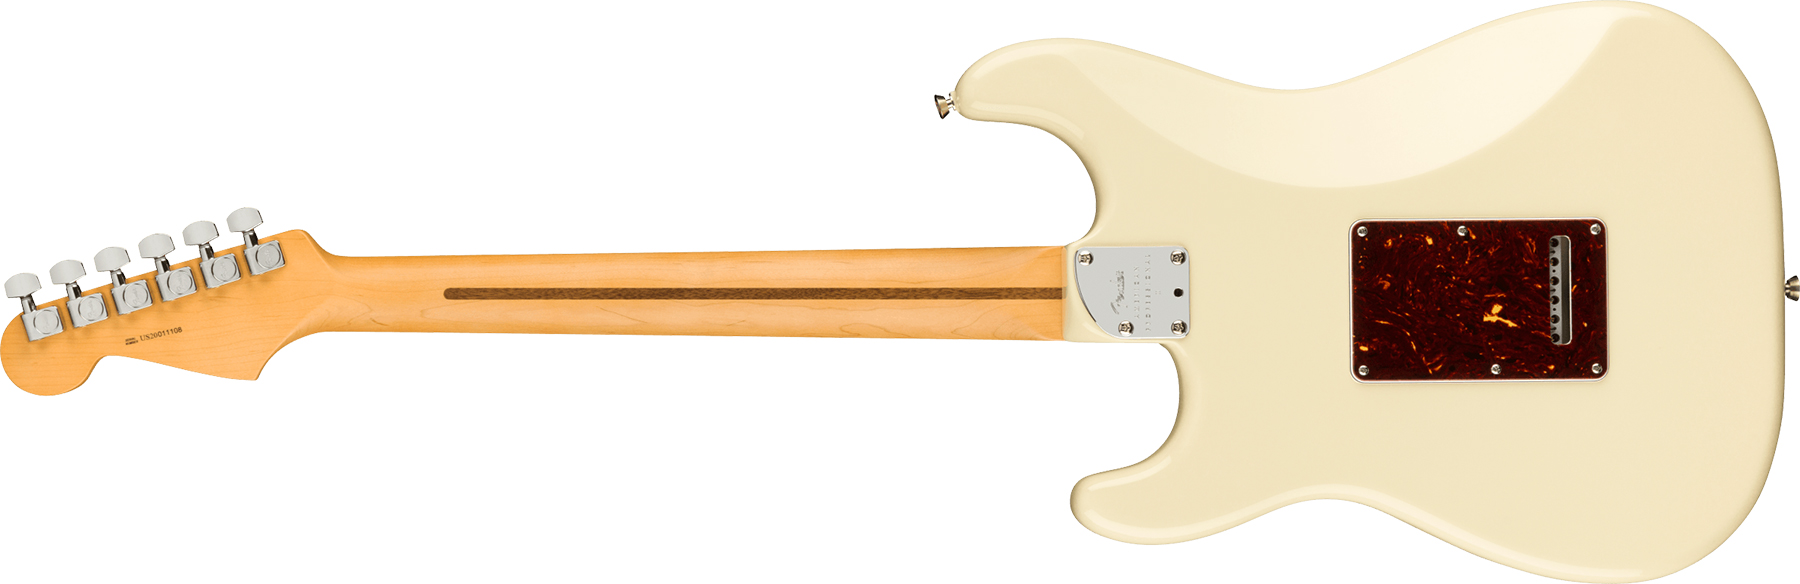 Fender Strat American Professional Ii Usa Rw - Olympic White - Elektrische gitaar in Str-vorm - Variation 1